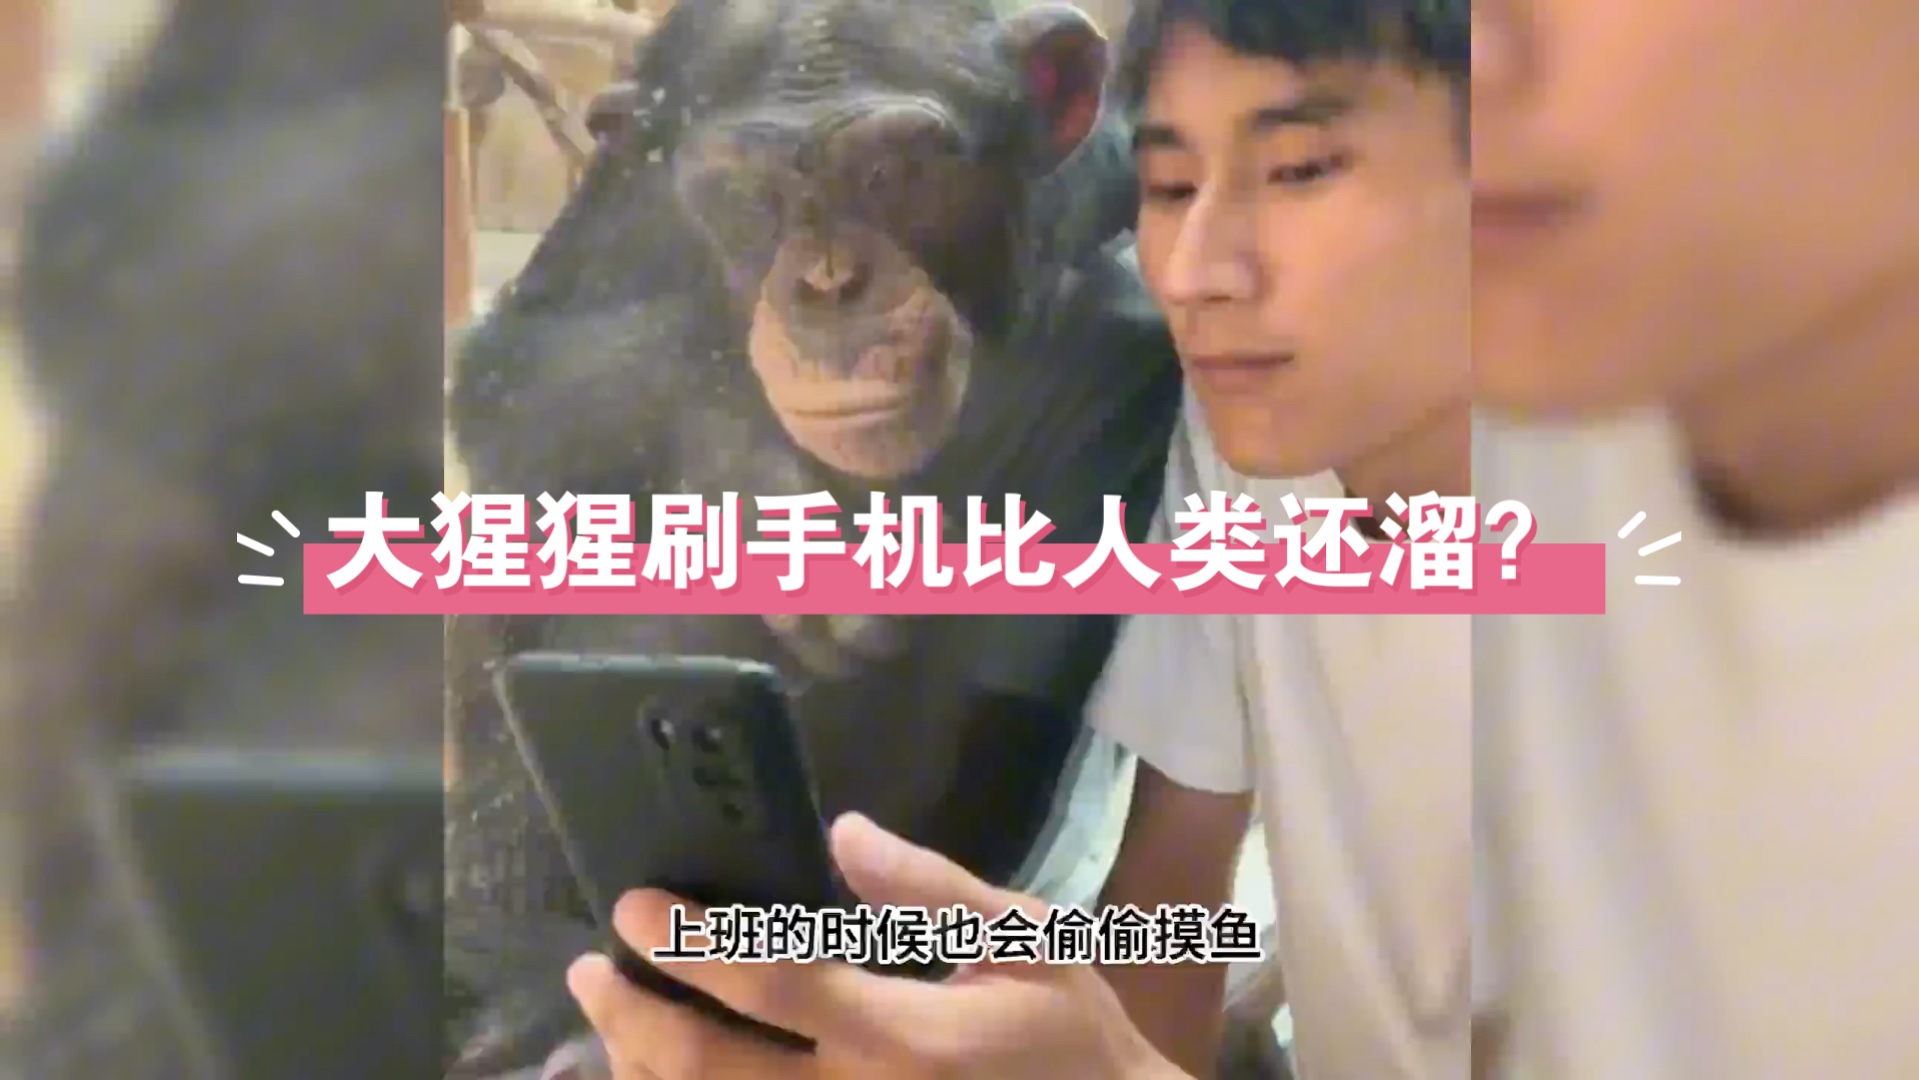 大猩猩玩手机?不可思议!